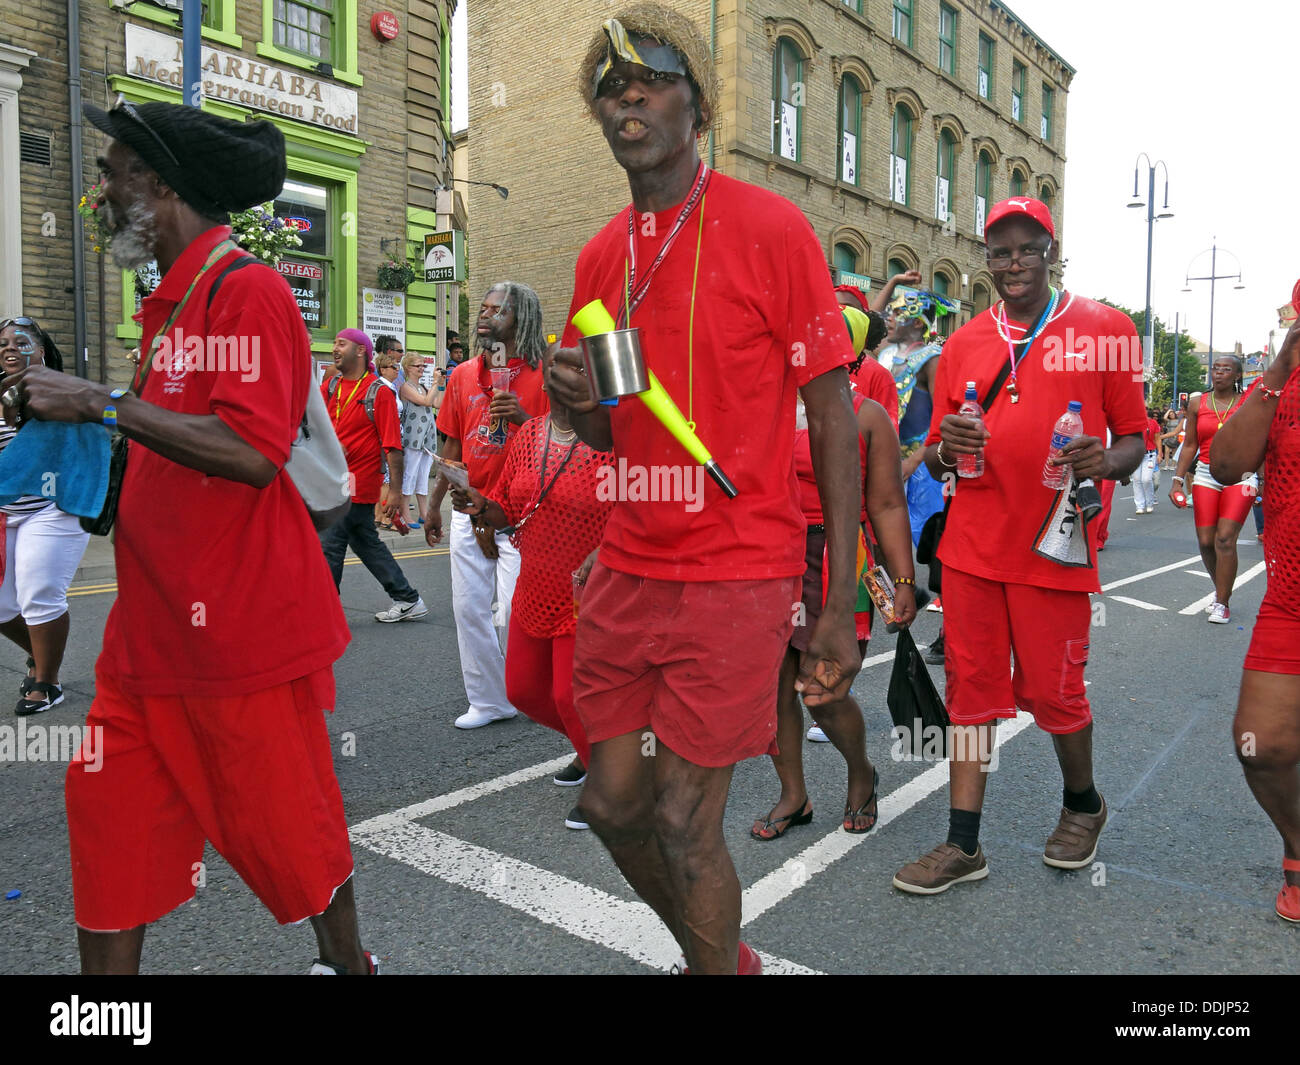 Danseurs costumés de Huddersfield Carnival parade 2013 fête de rue Africains des Caraïbes Banque D'Images